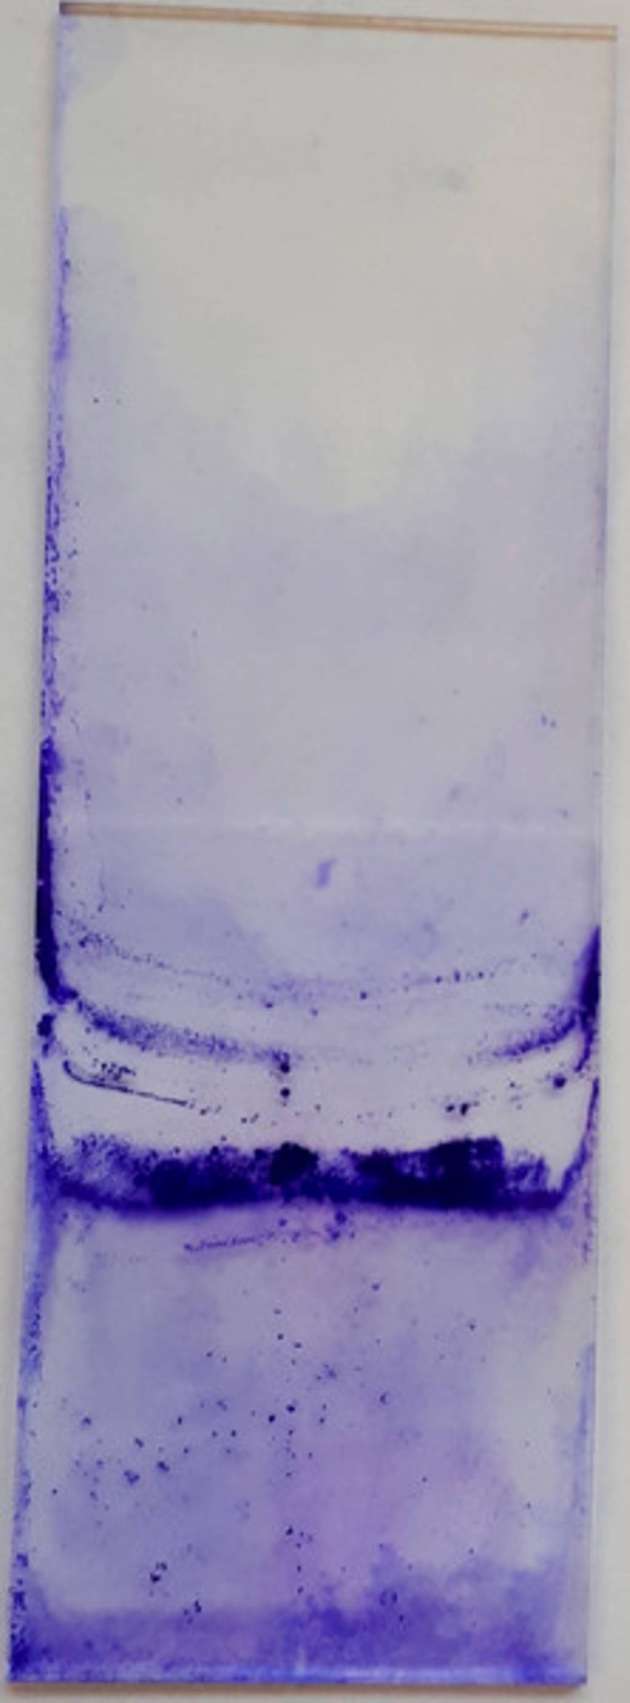 Der Erreger Pseudomonas simiae auf einem Glasträger